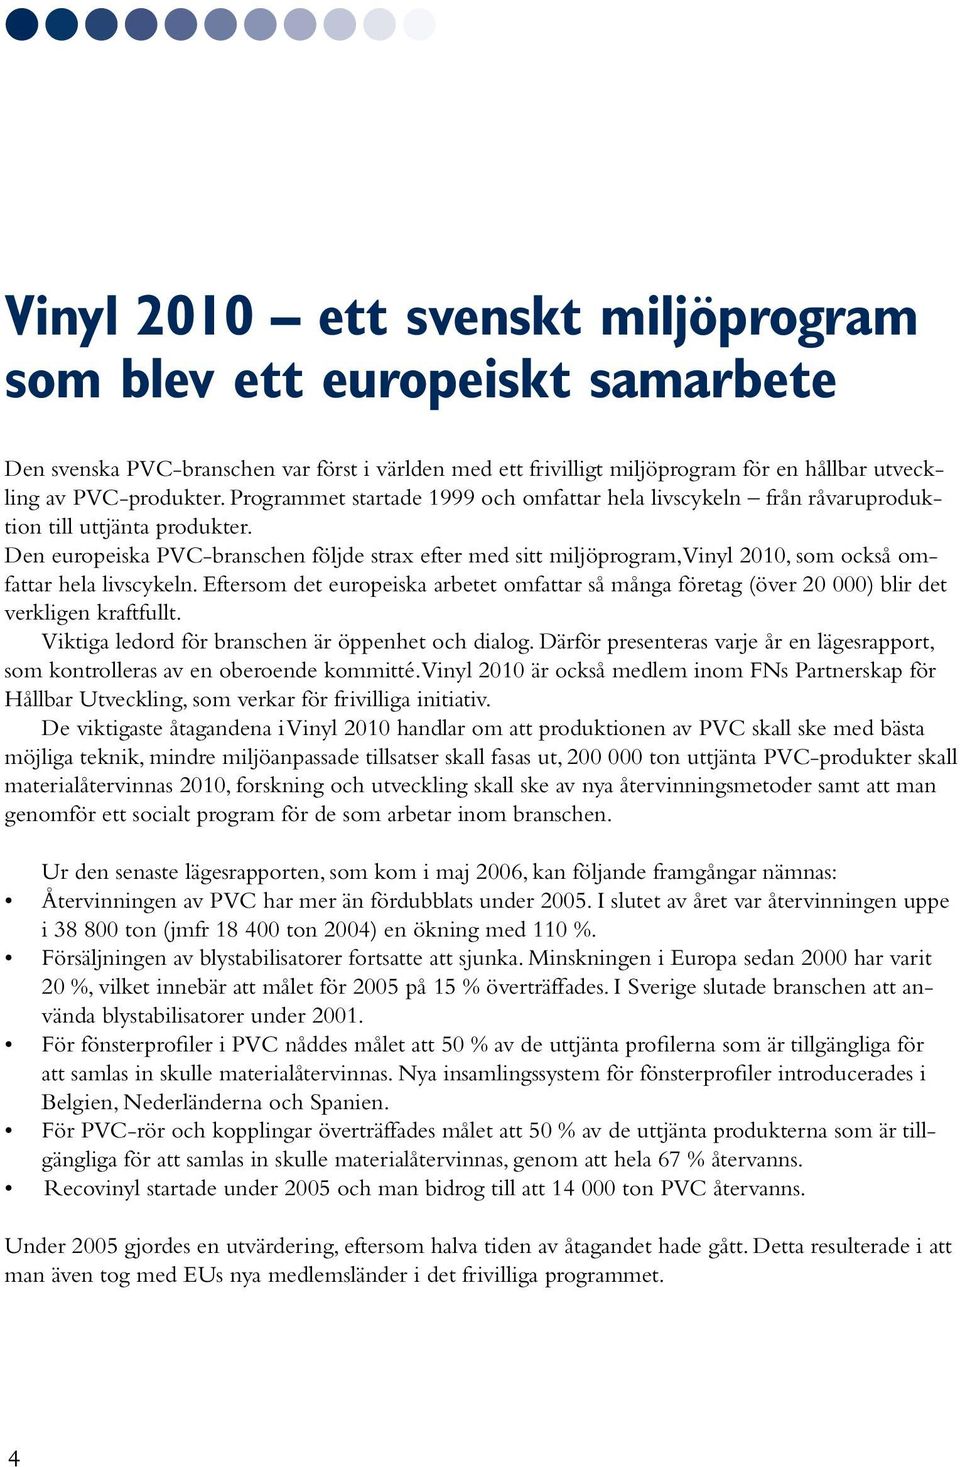 Den europeiska PVC-branschen följde strax efter med sitt miljöprogram, Vinyl 2010, som också omfattar hela livscykeln.